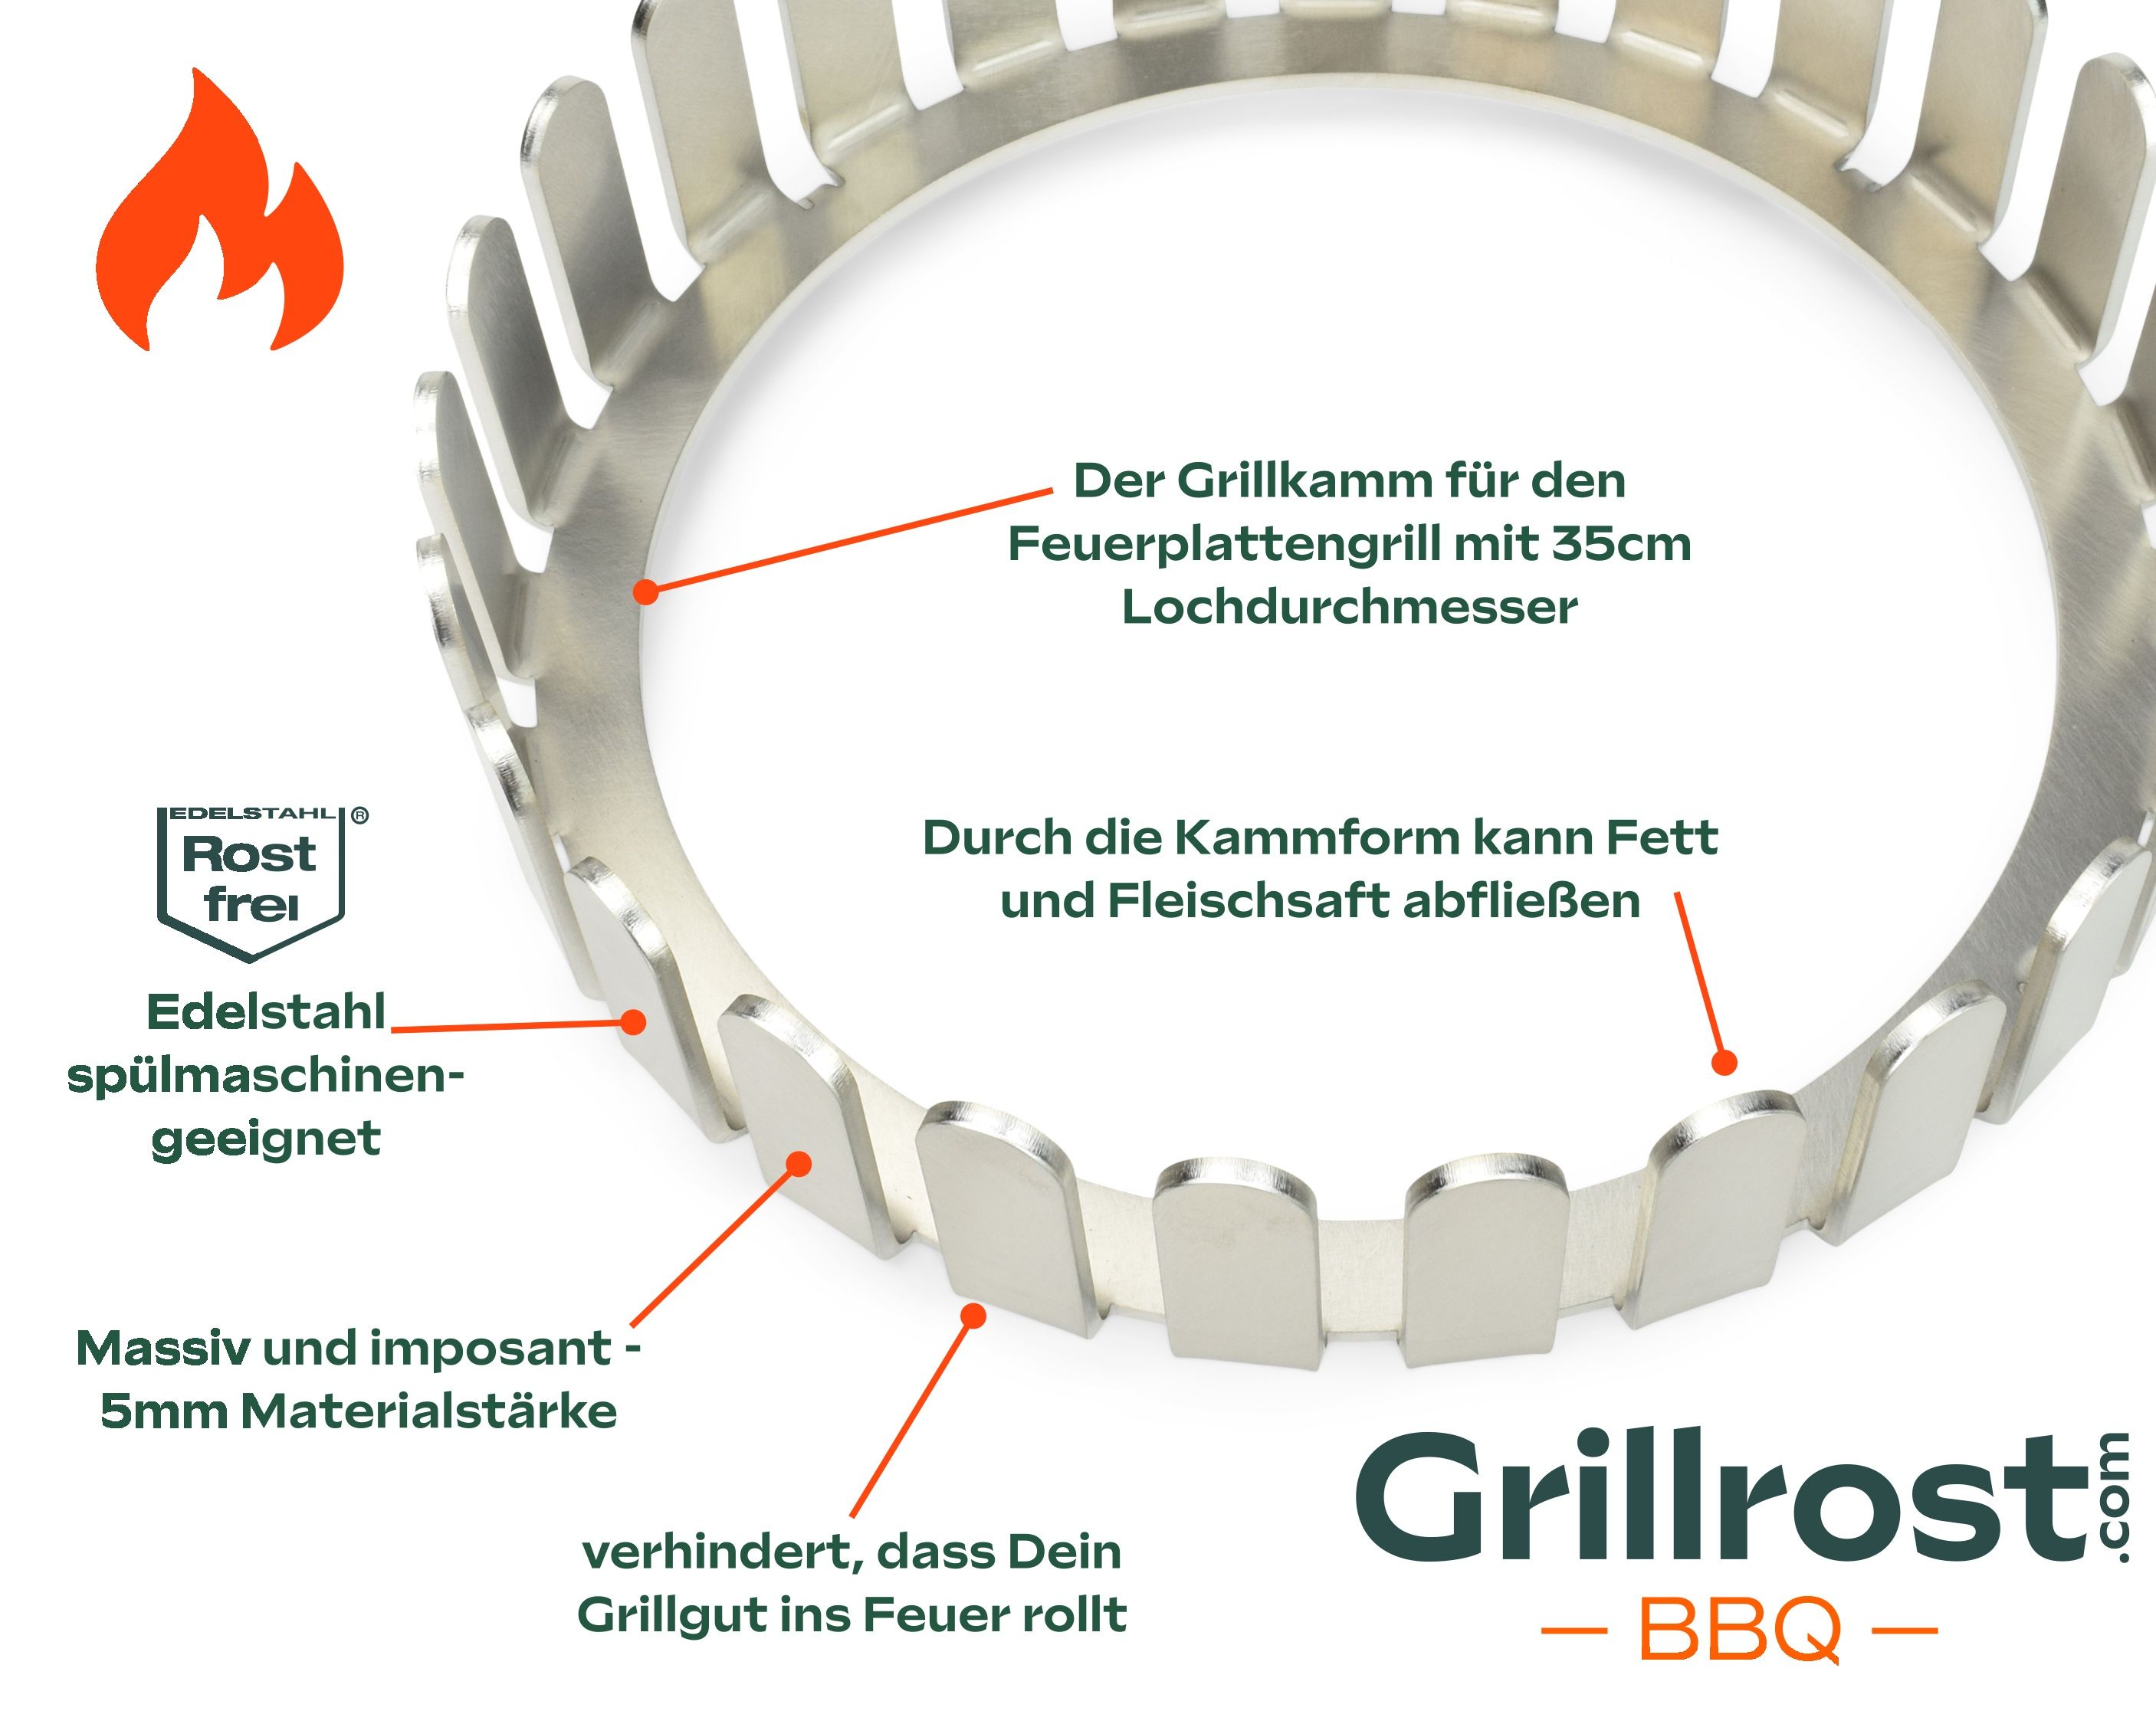 Le gril à plaques de feu Grillkamm Massif et imposant - 5 mm d'acier inoxydable